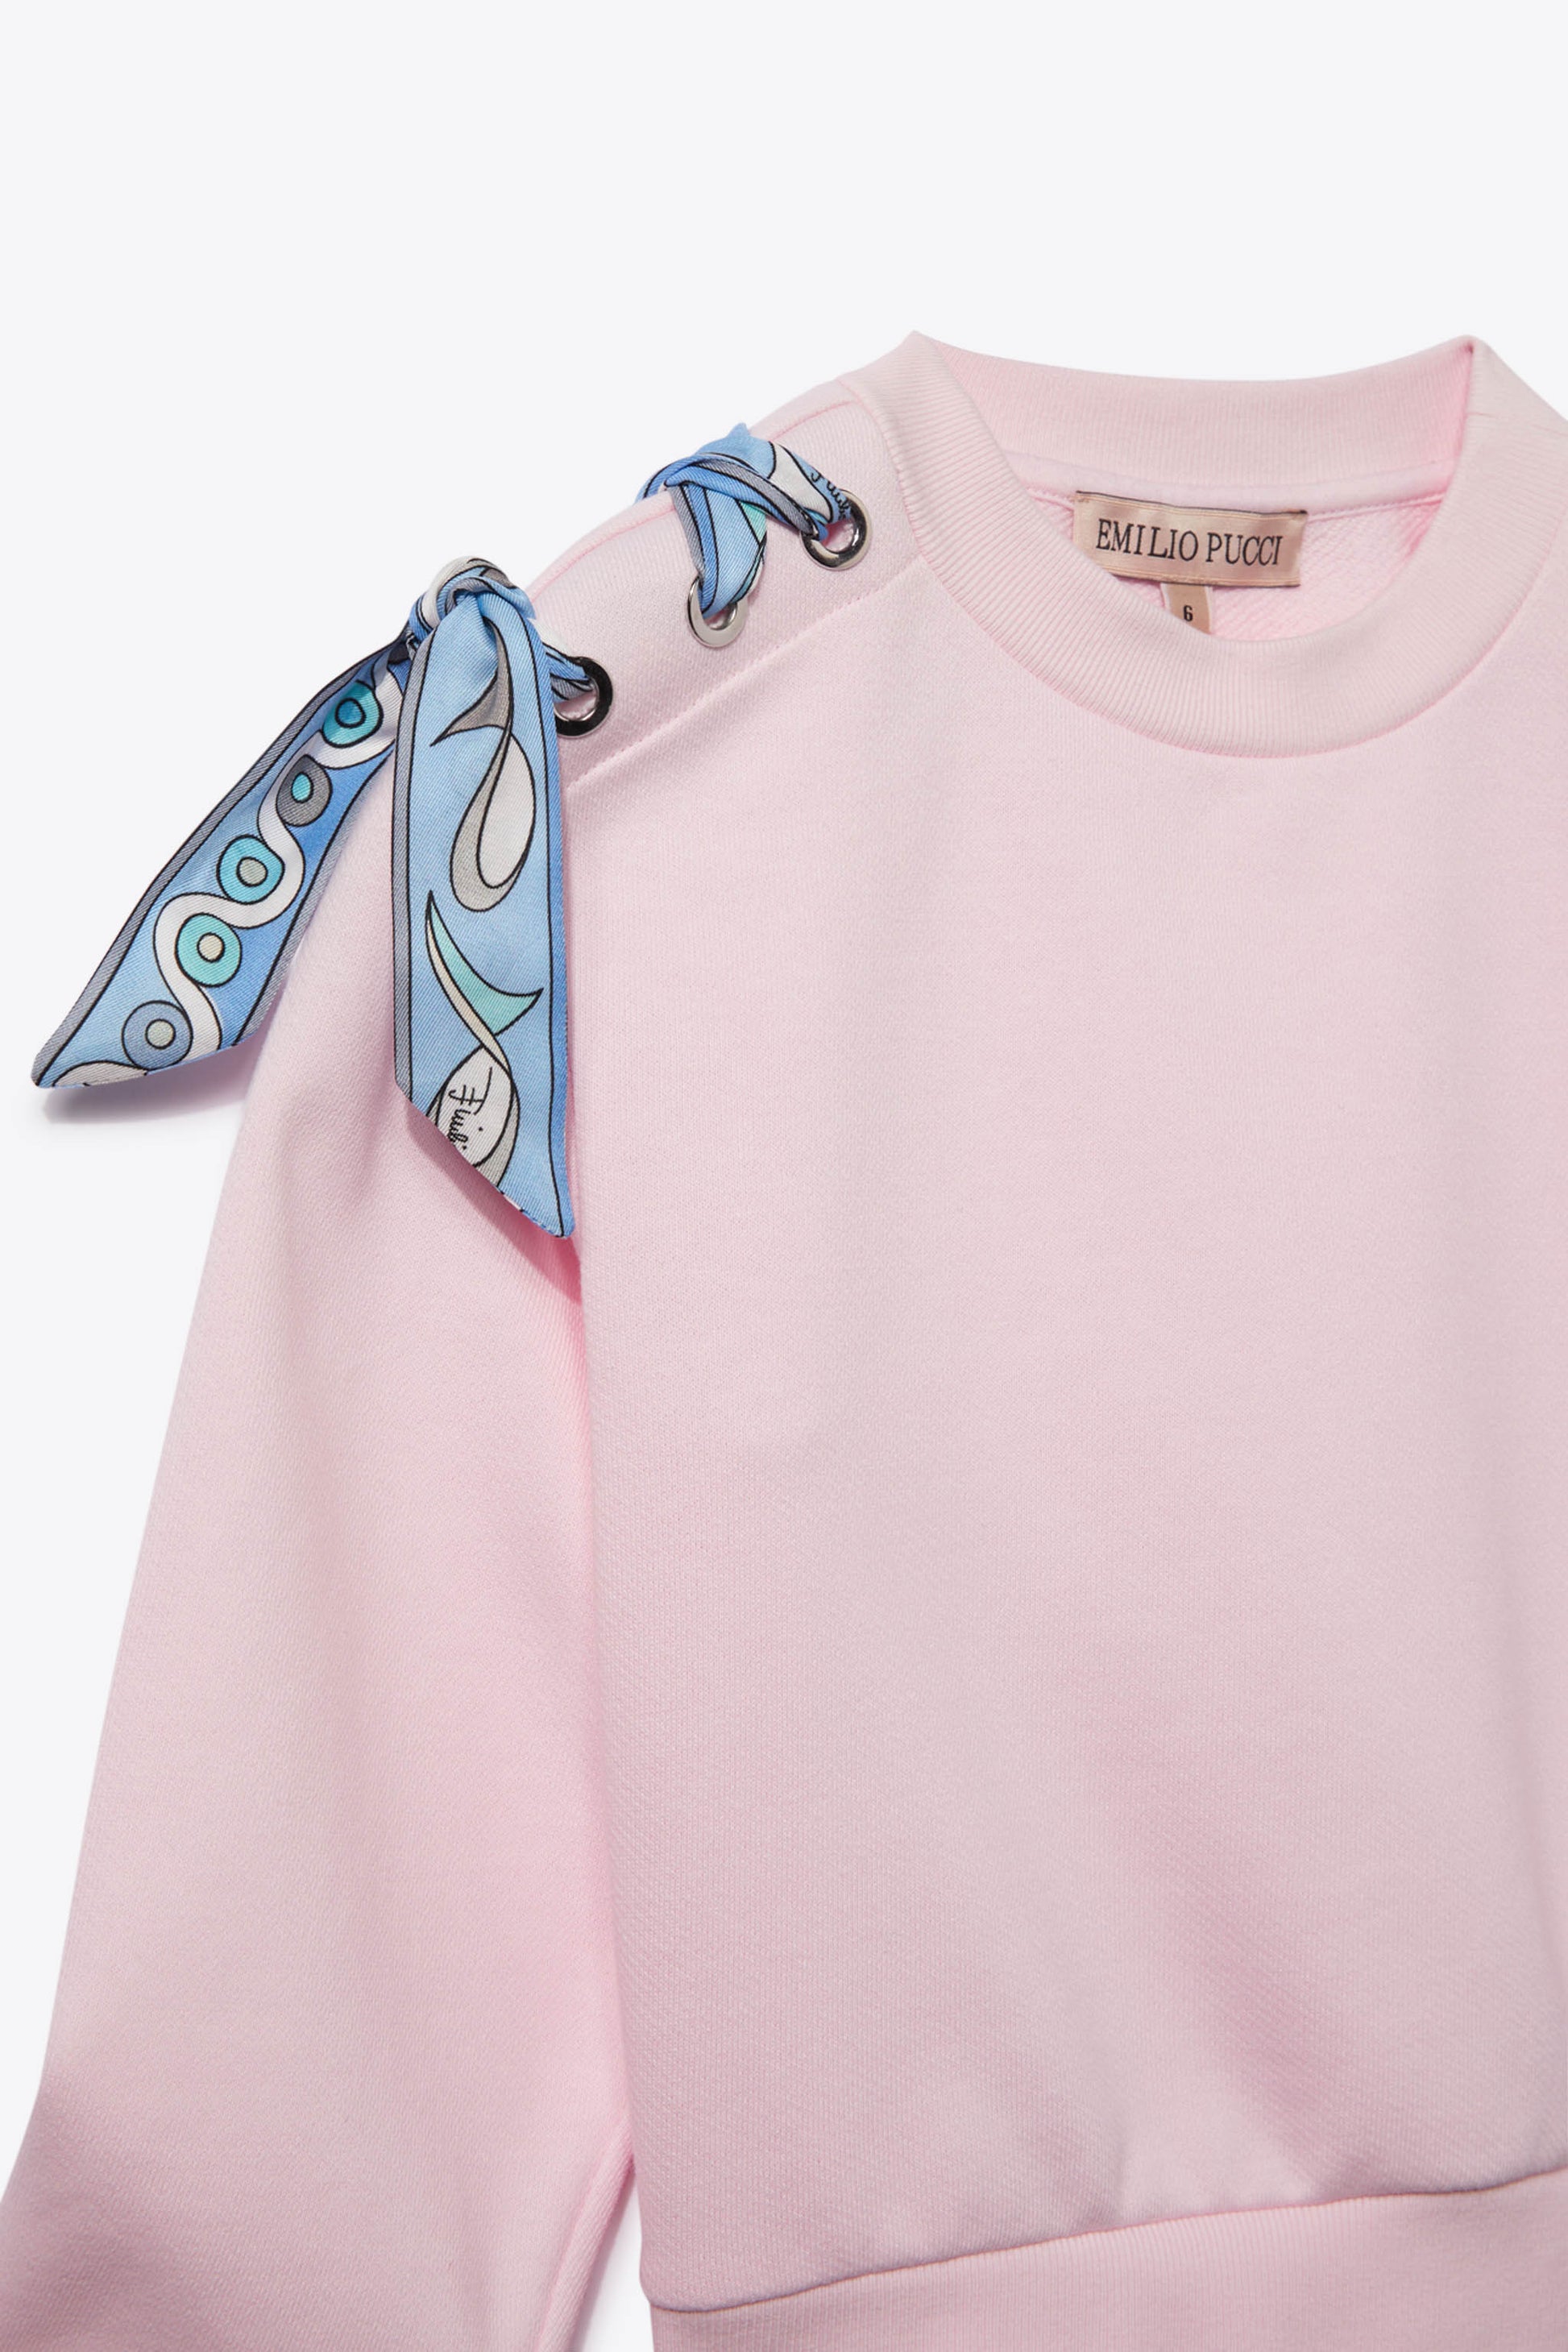 Emilio Pucci Marmo Pesci-print Silk Scarf in Pink